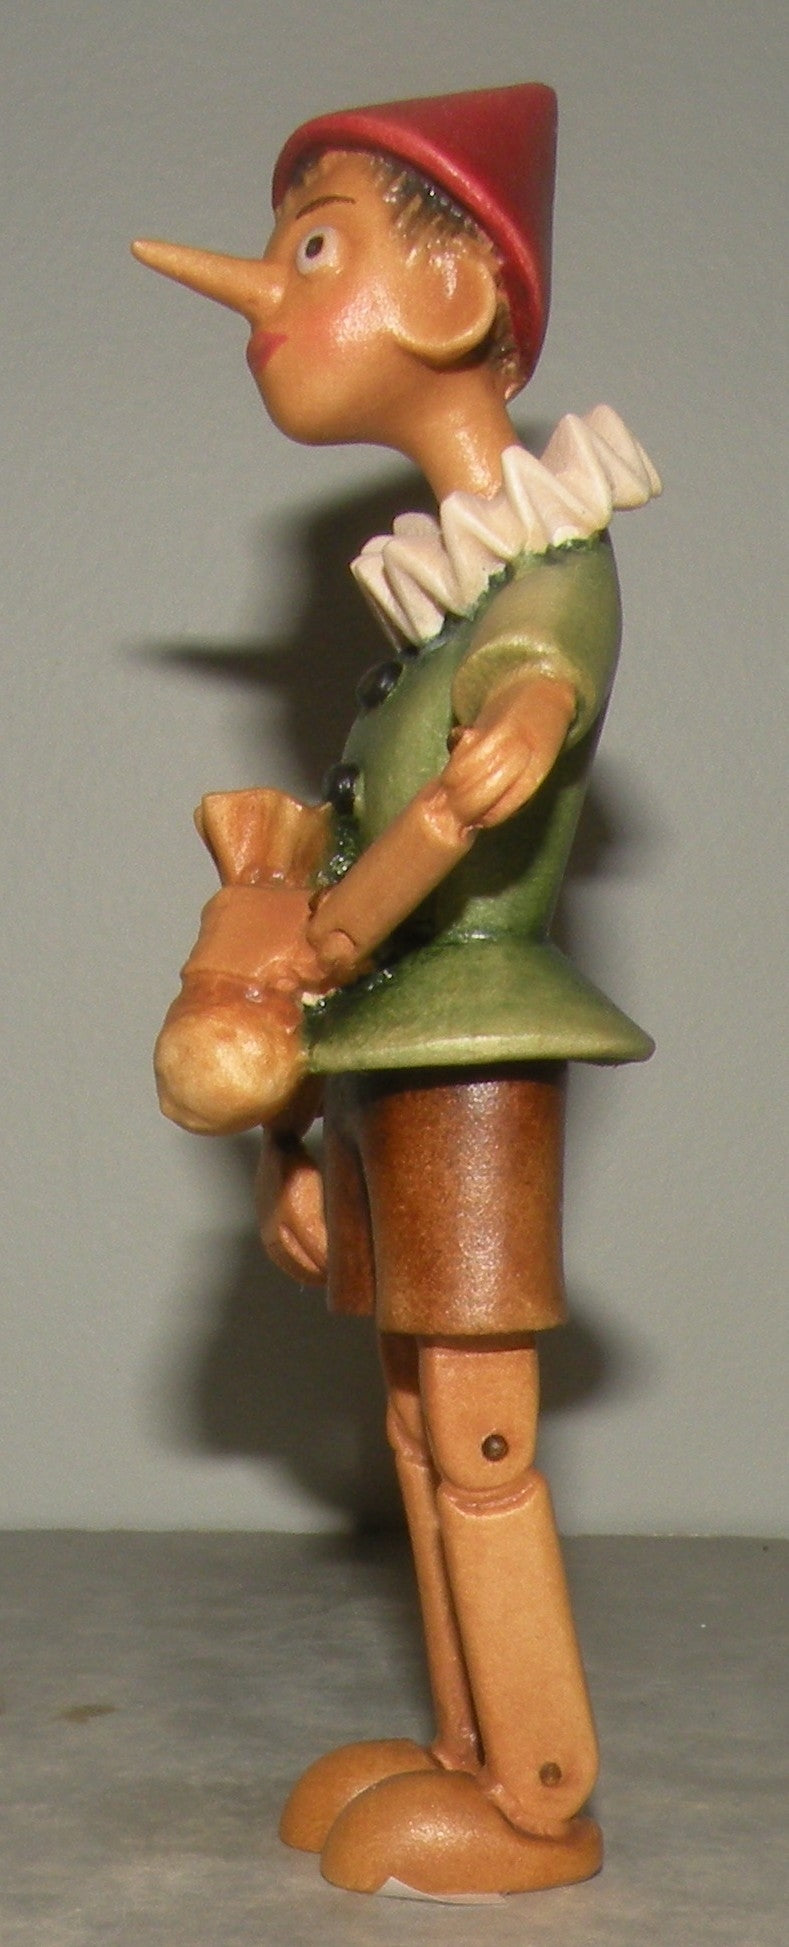 Pinocchio, 00612-A, Lepi